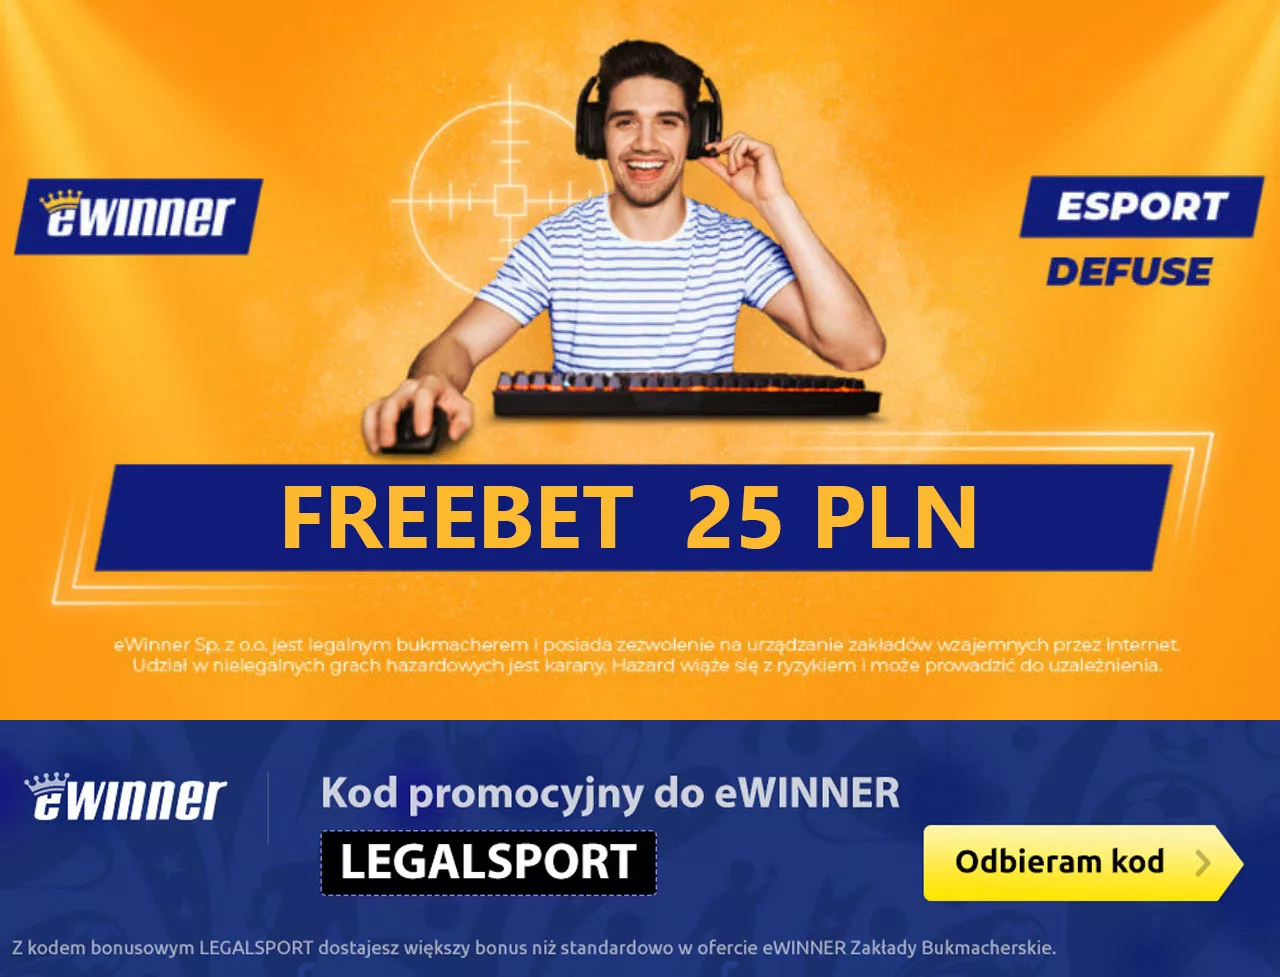 Freebet Esport Defuse - premia 25 zł +  bez ryzyka 